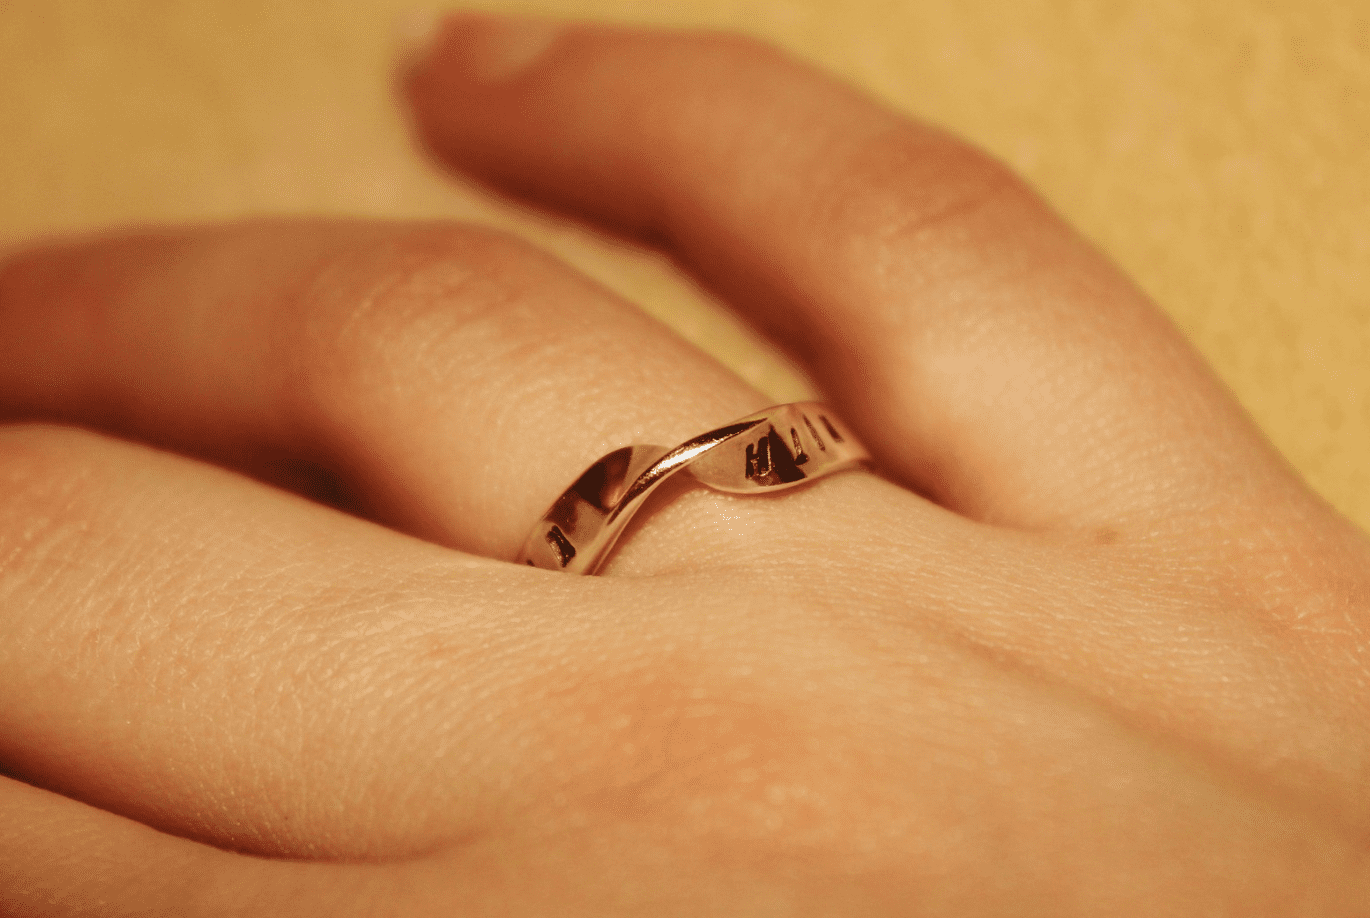 A simplistic ring. | Source: flickr.com